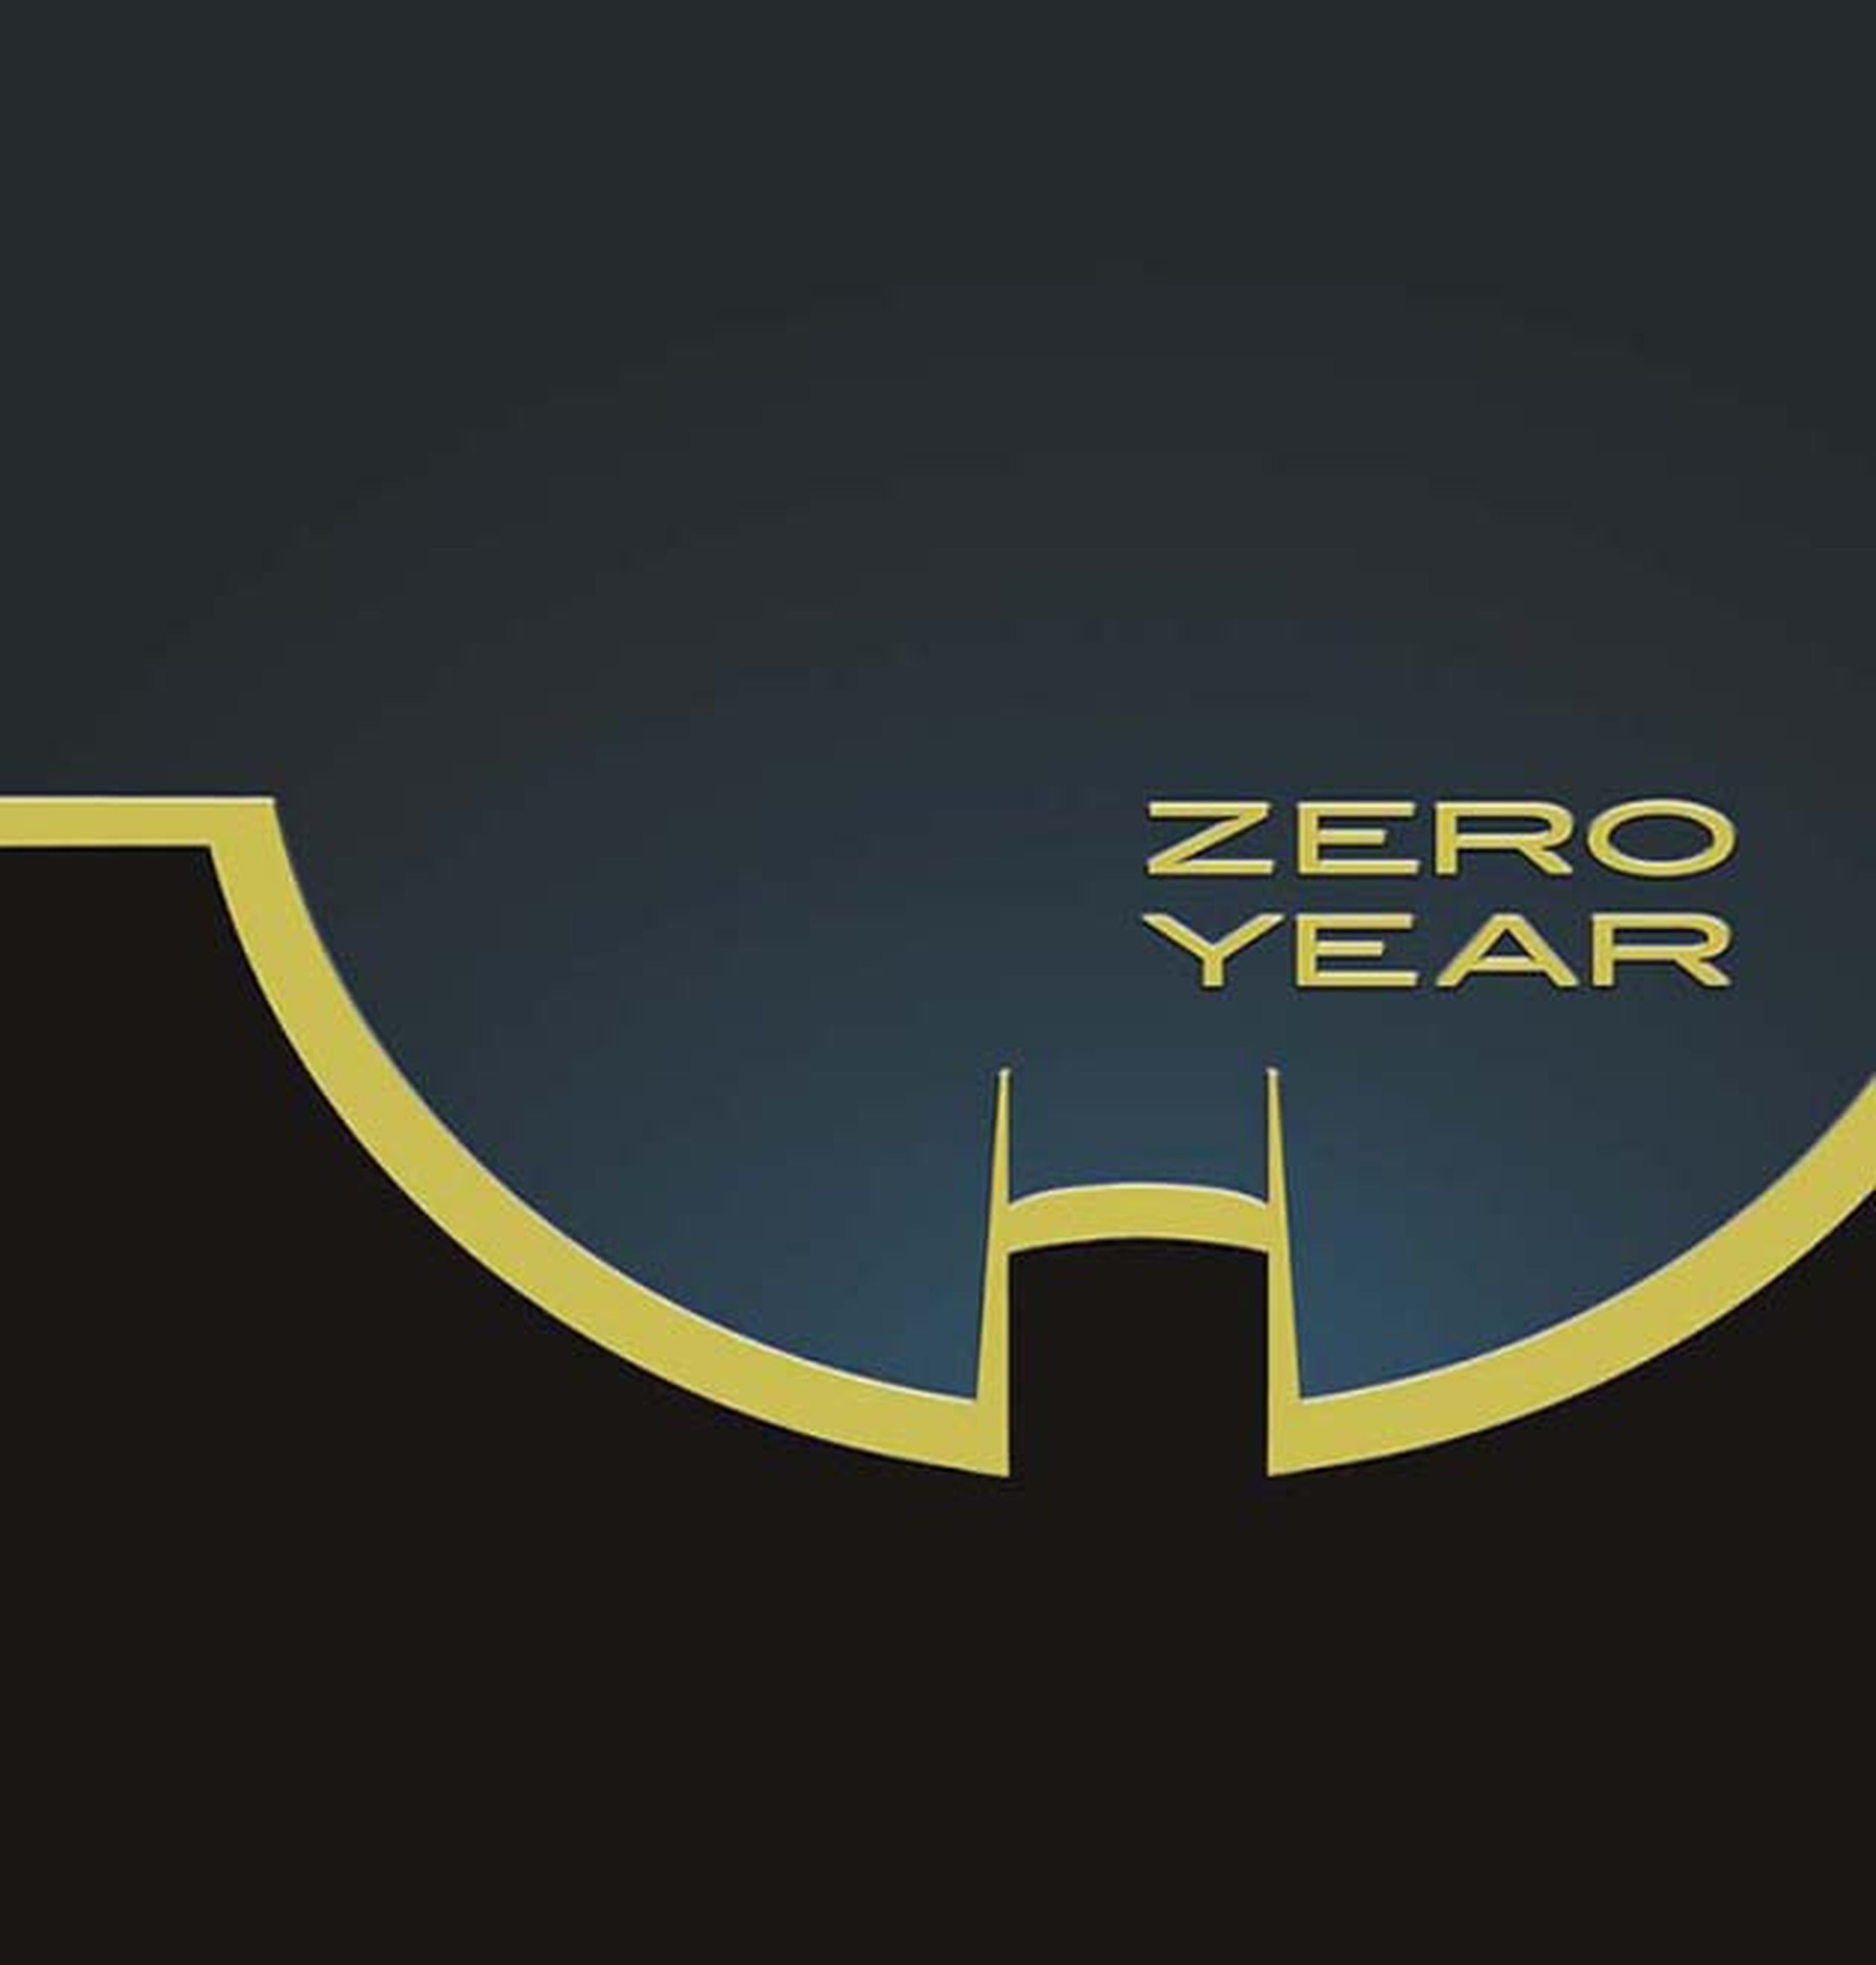 Snyder y Capullo harán Batman: Zero Year